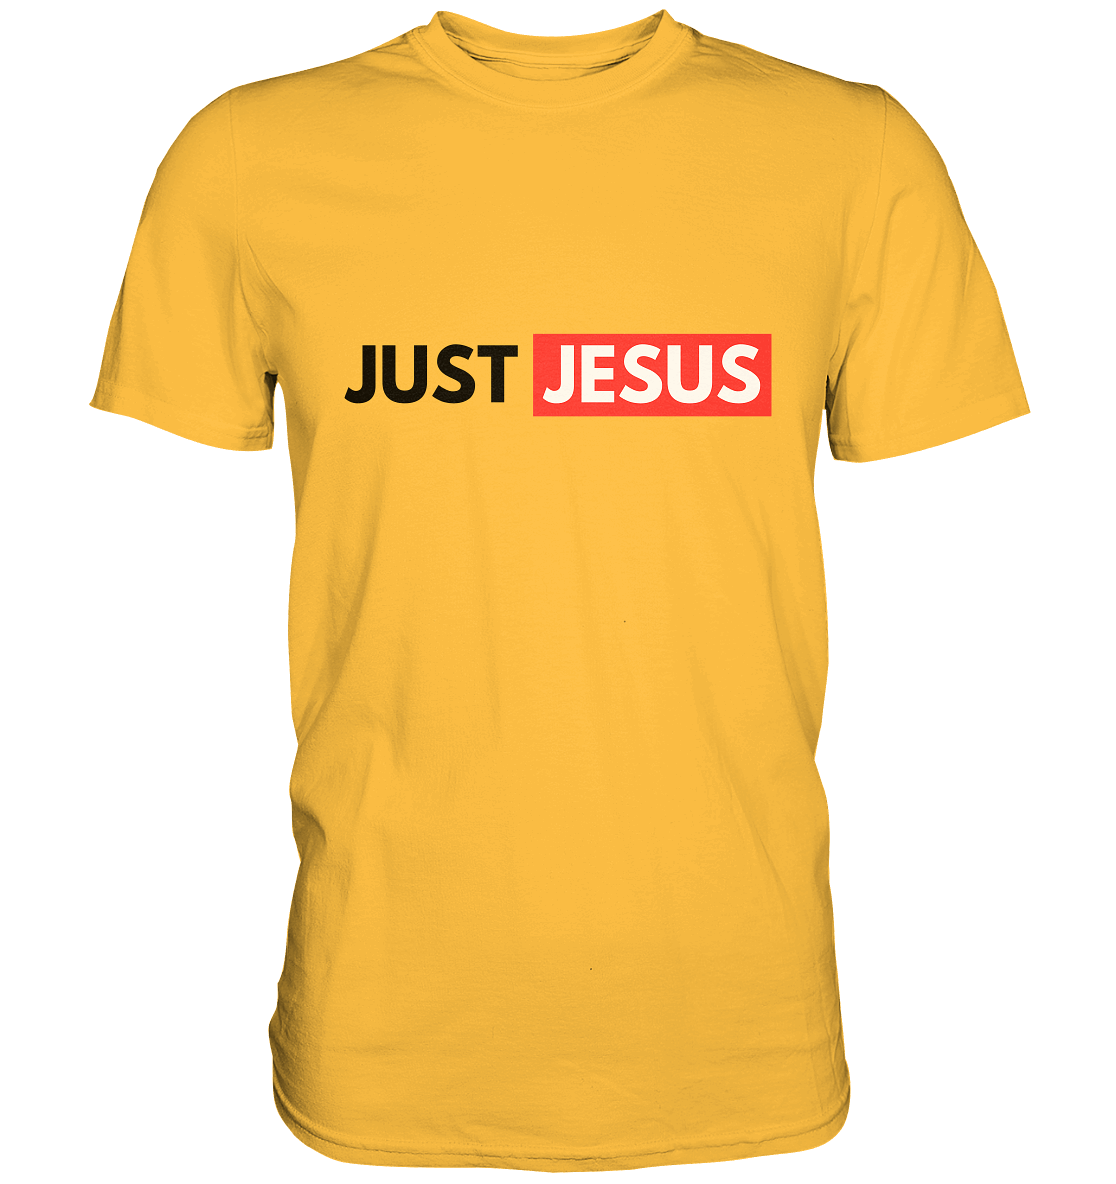 Einfach nur Jesus - Premium Shirt